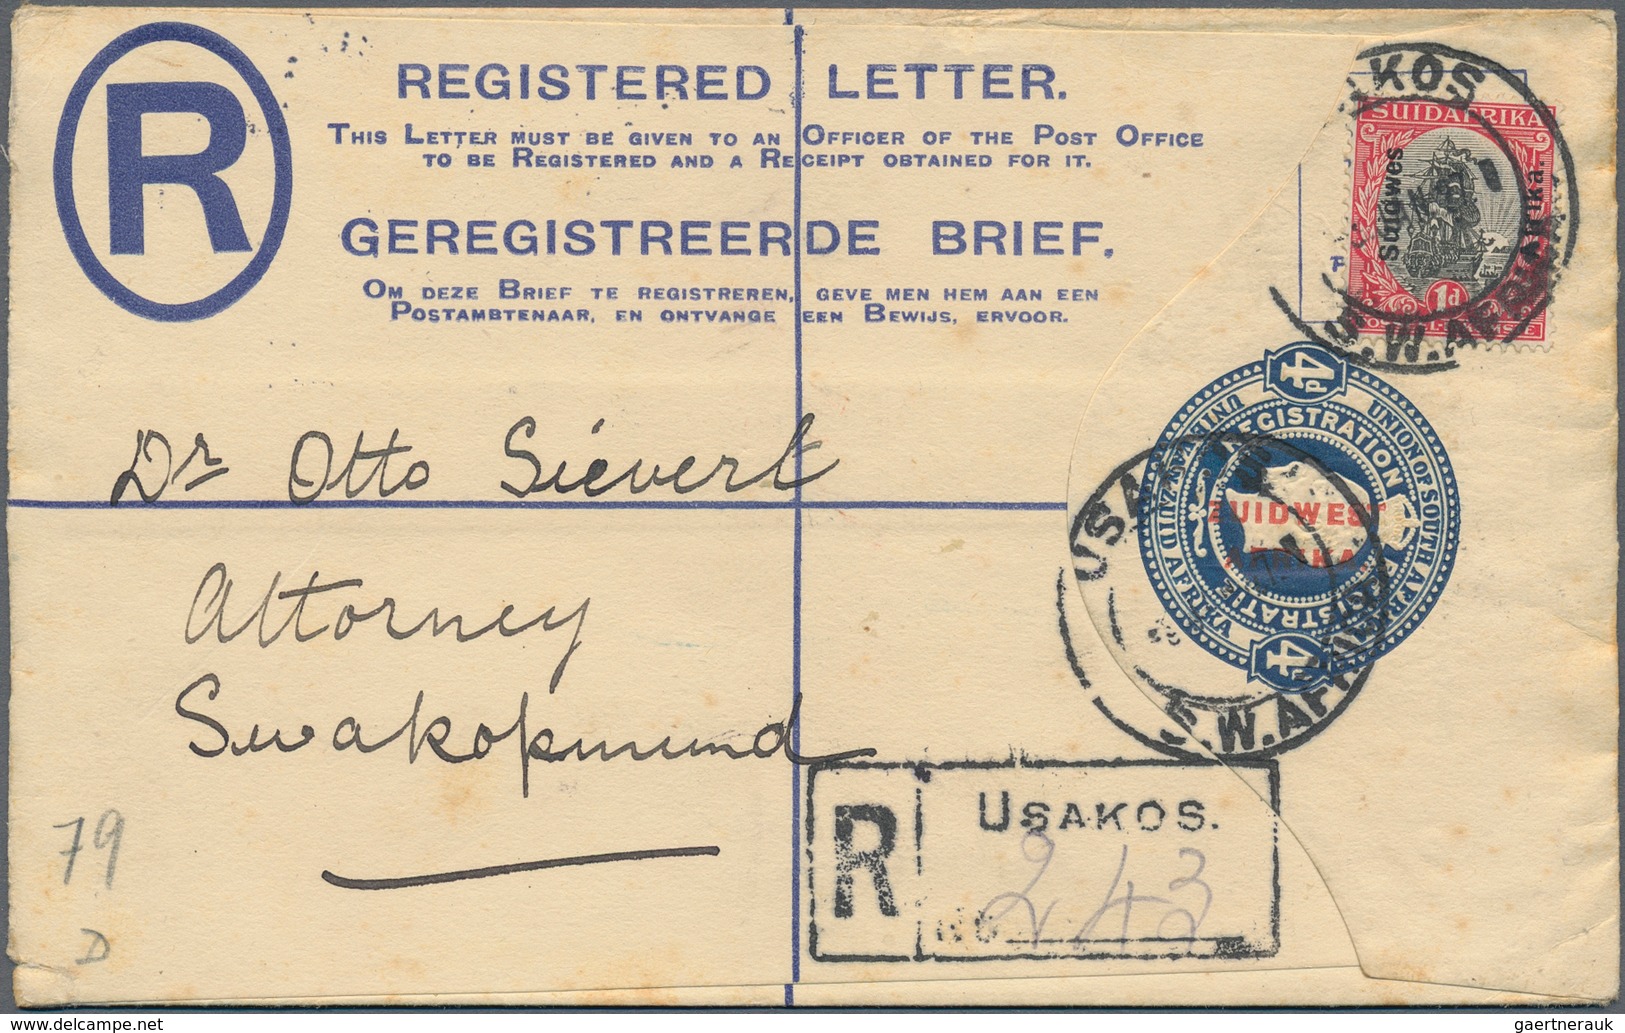 Südwestafrika: 1923/1928, 15 used registered letter stationary envelopes (Higgins & Gage ex no. 3/11